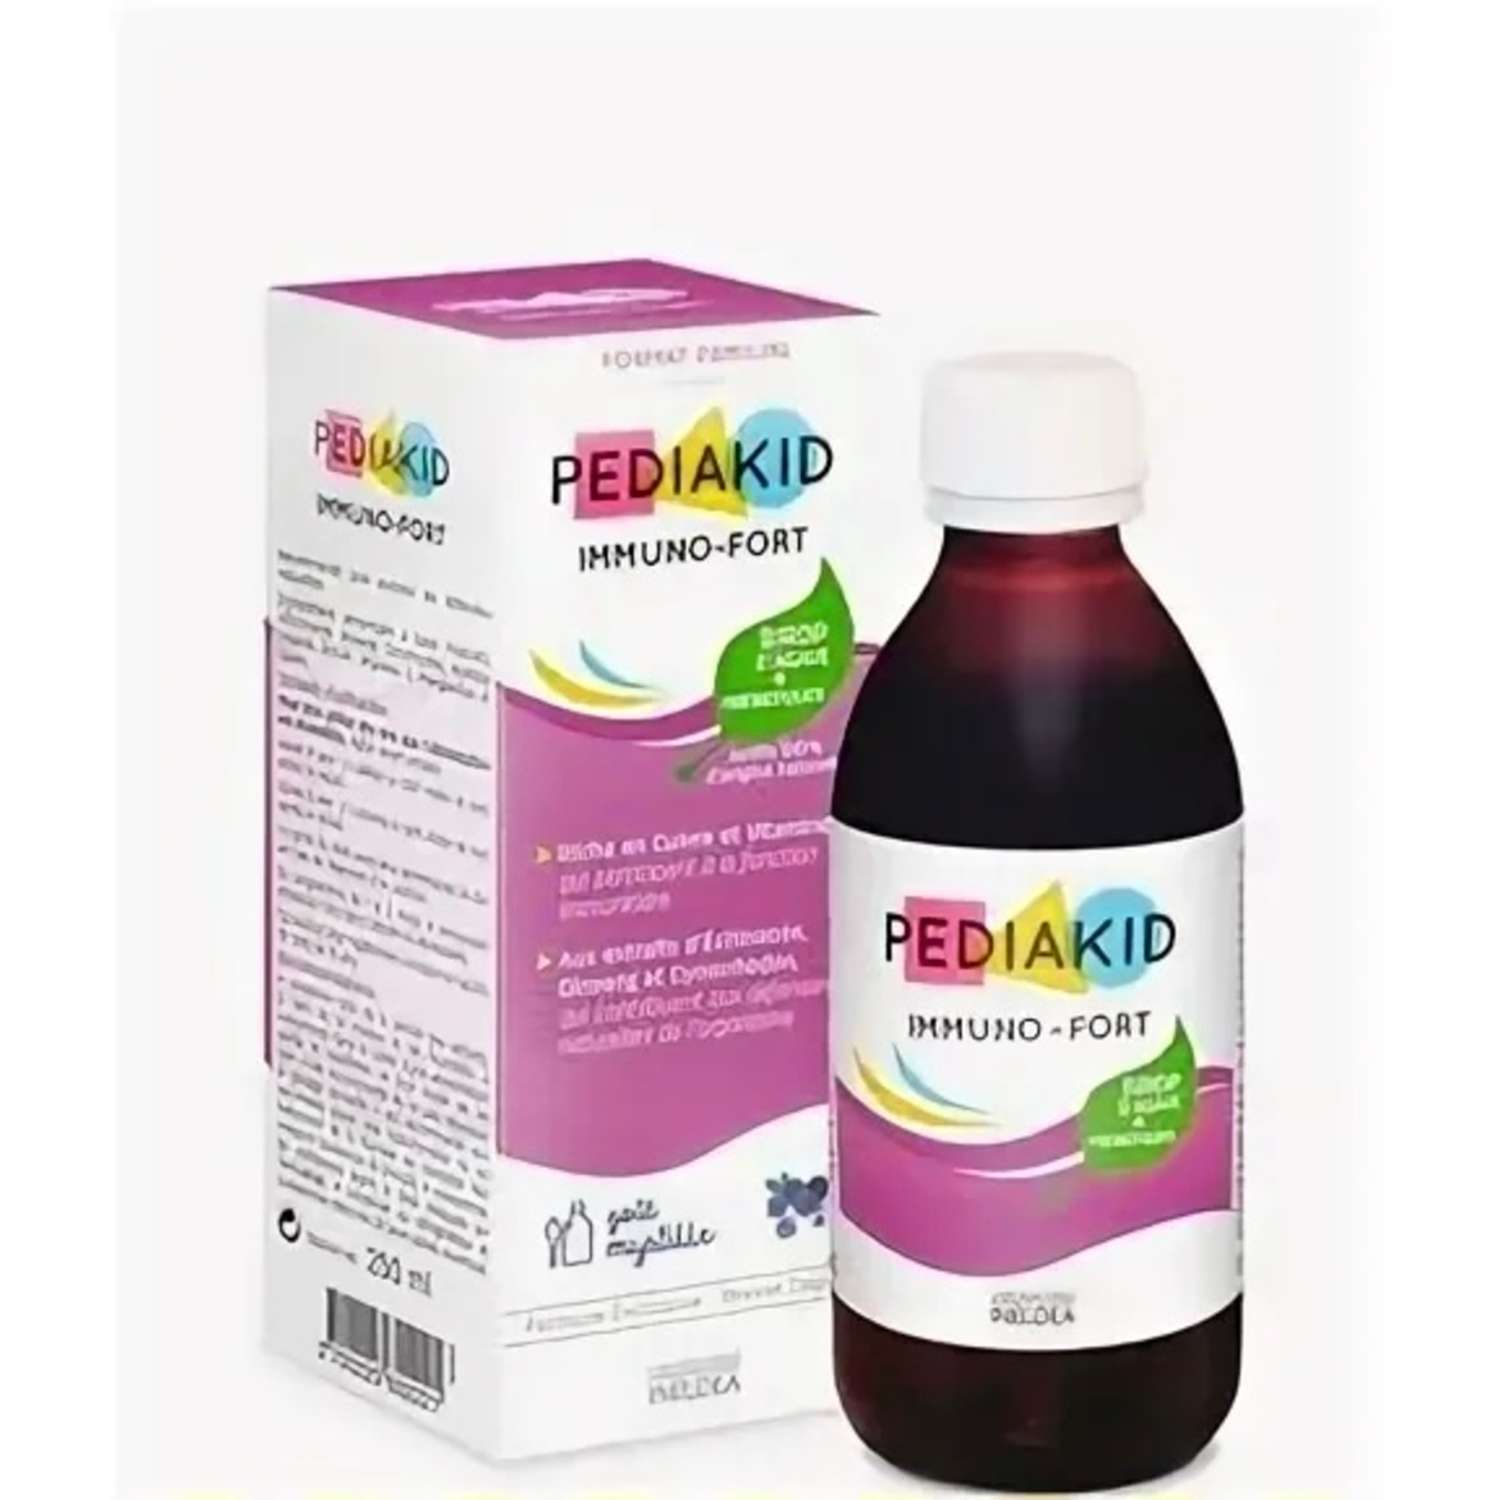 БАД Pediakid PEDIAKID Сироп Иммуно-Форт для повышения иммунитета / Pediakid Immuno-Fort 250 мл - фото 1